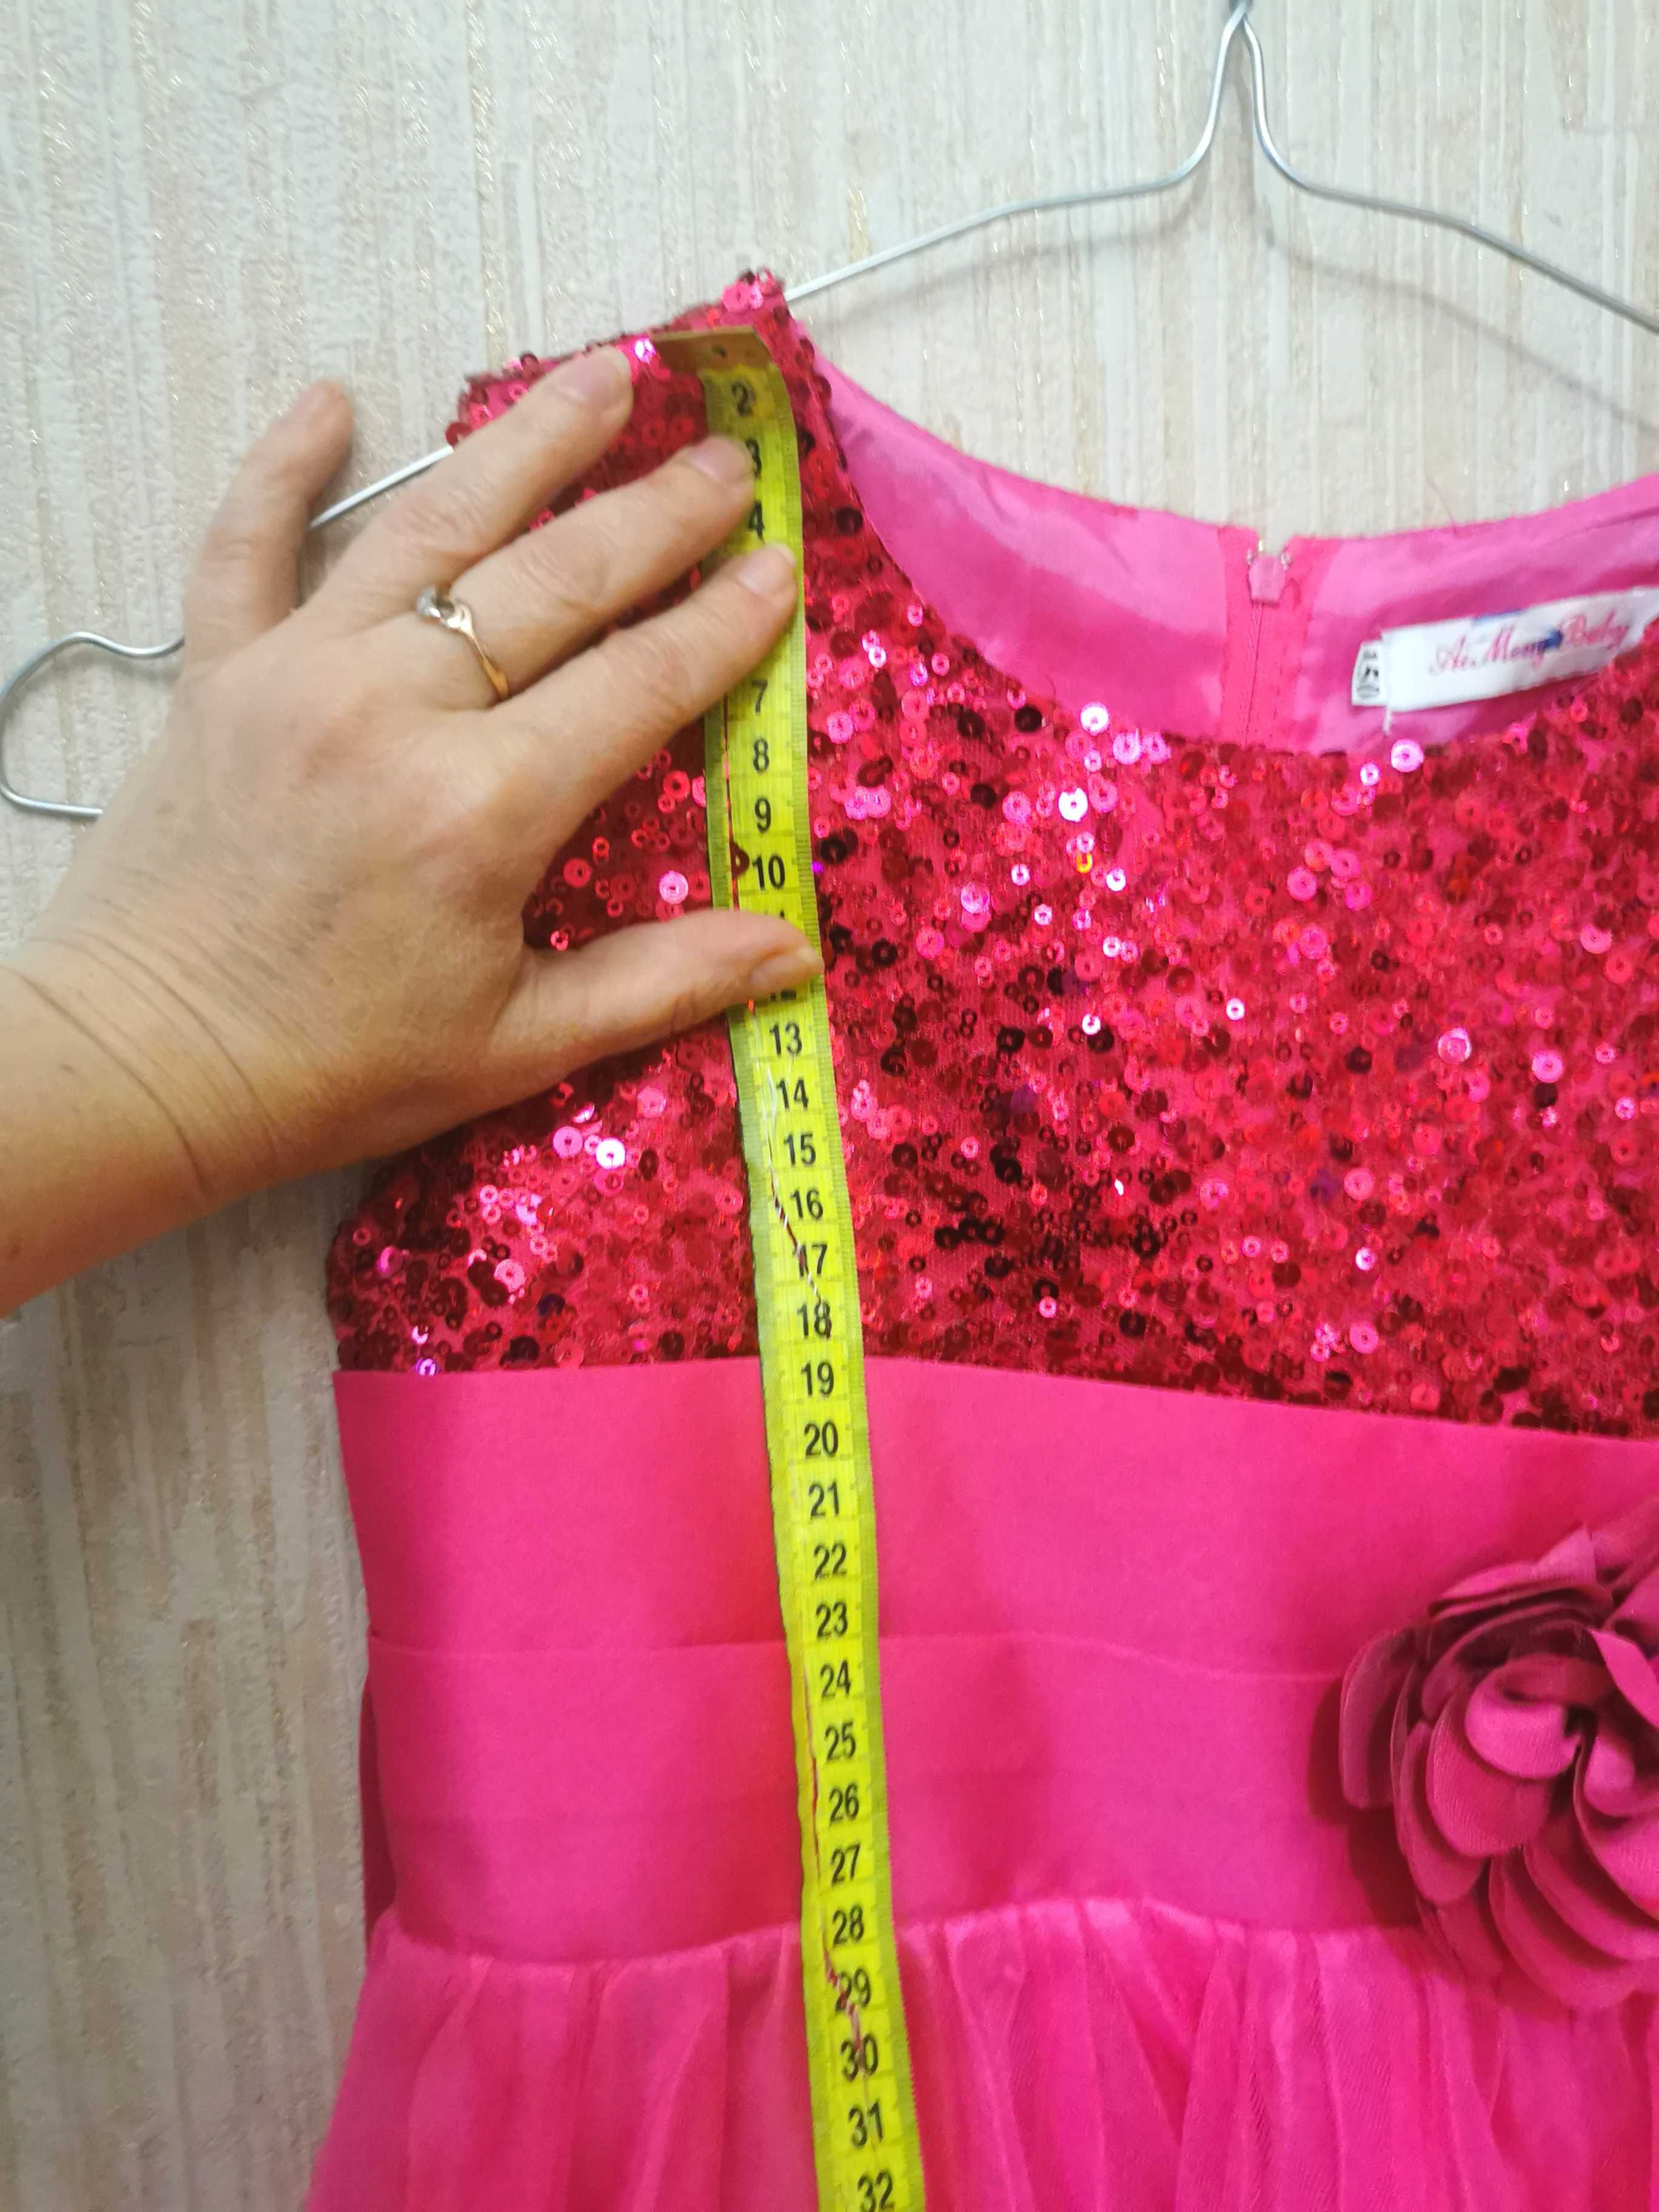 Платье випуск розовое нарядное 6-7 лет праздник